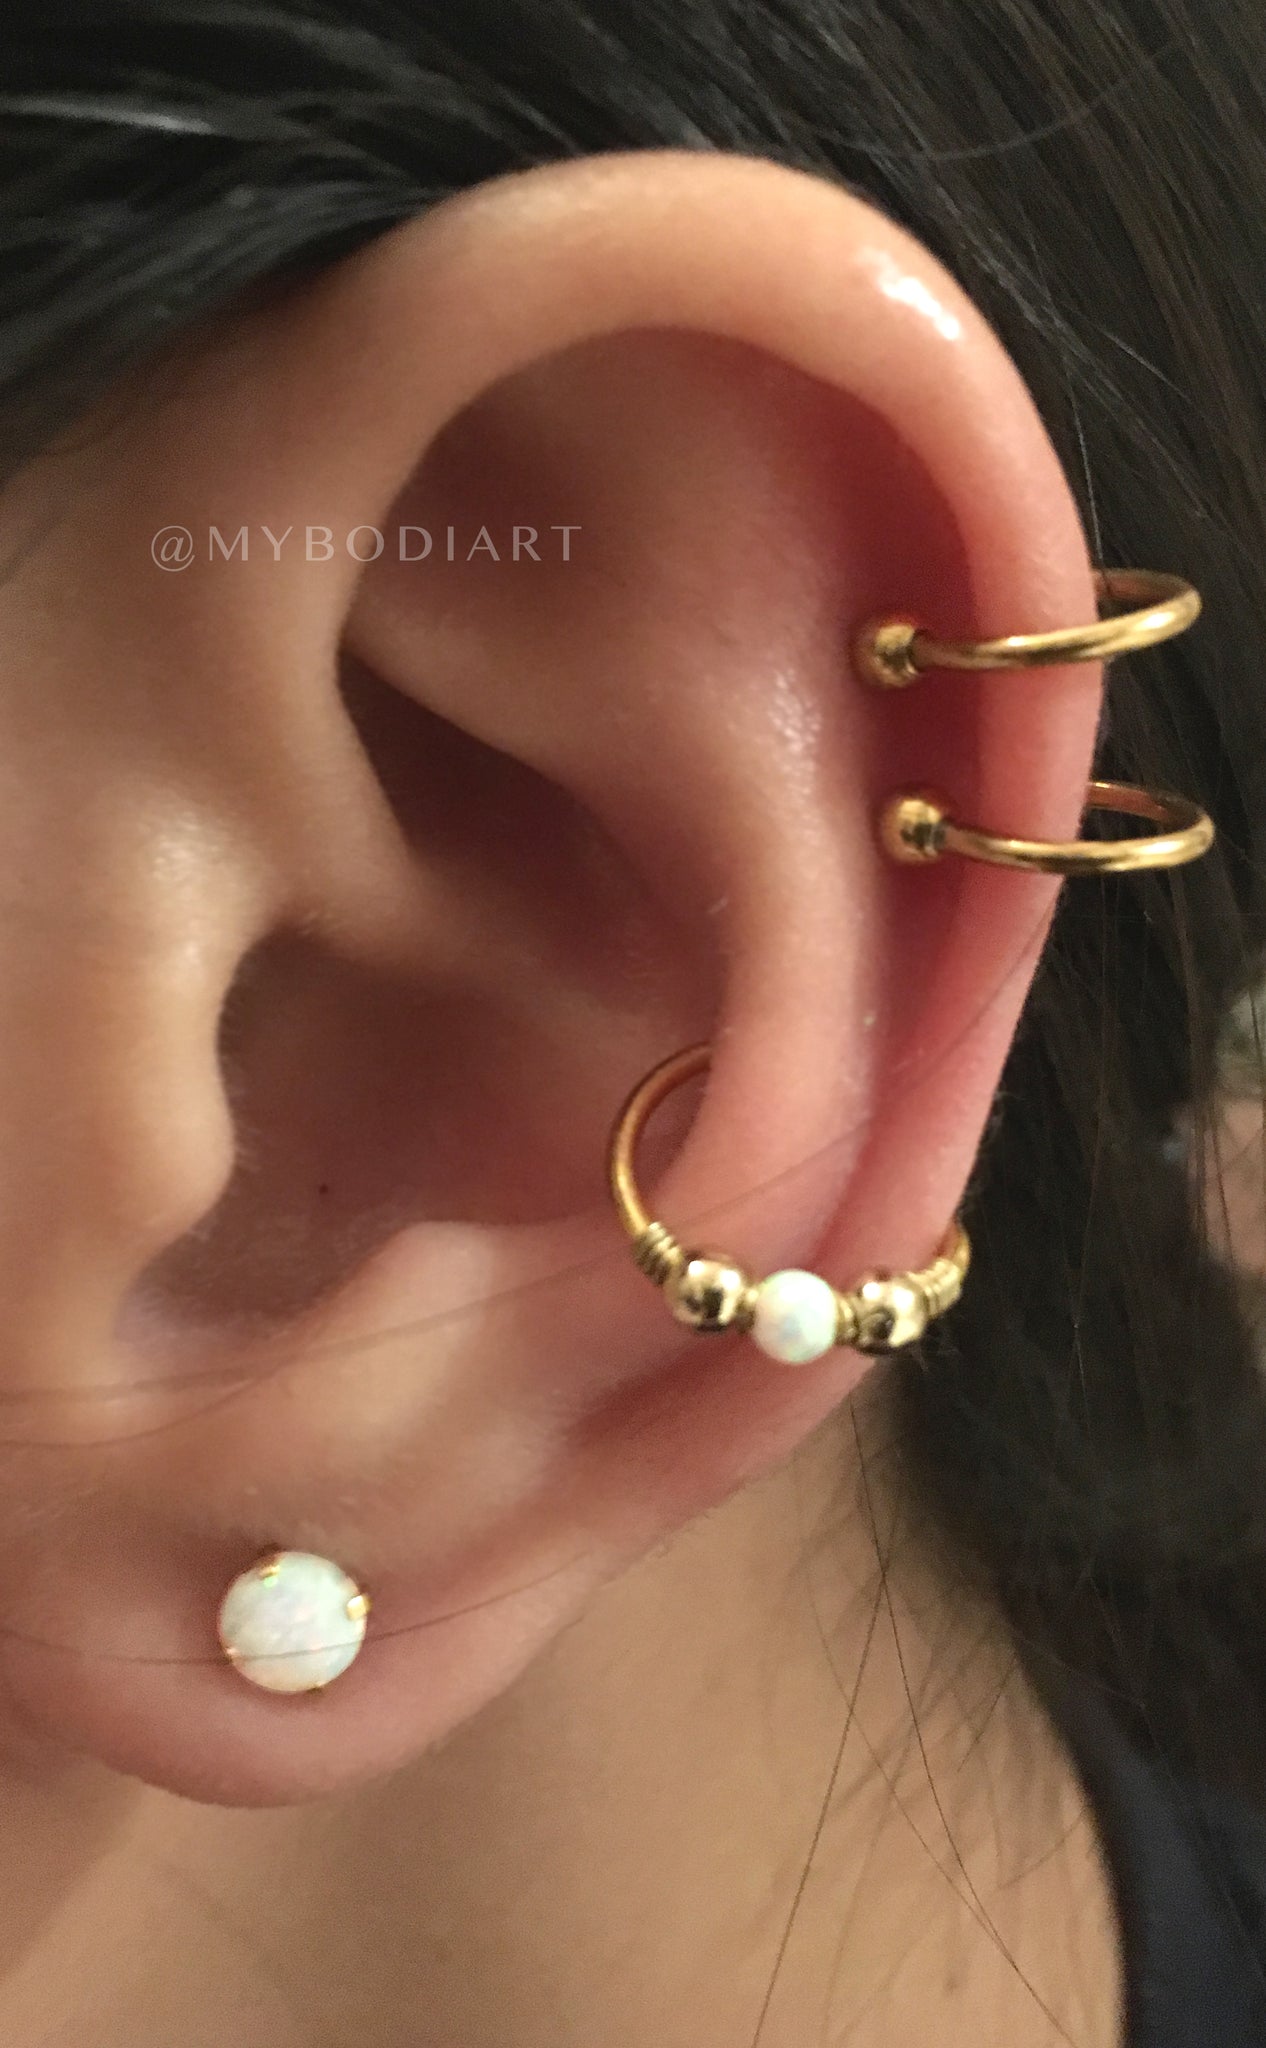 Double Cartilage Ear Piercing Ideas for Girls - Opal Conch Earring Ring - Ear Lobe Studs - www.MyBodiArt.com 